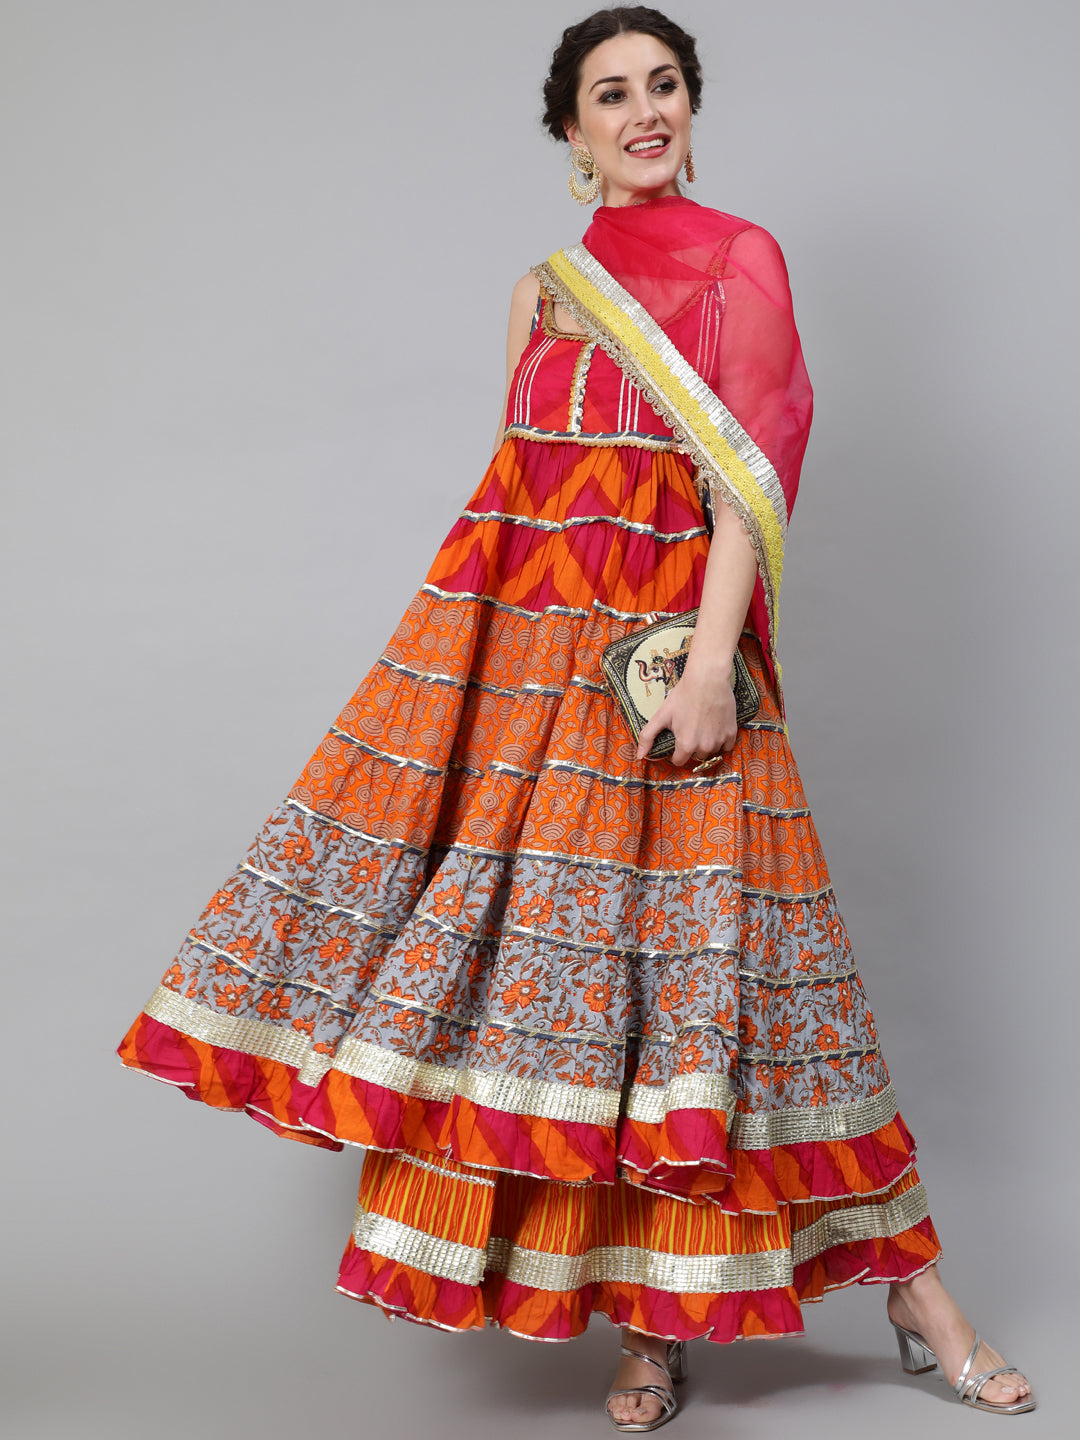 Orange Embellished Anarkali Skirt With Dupatta